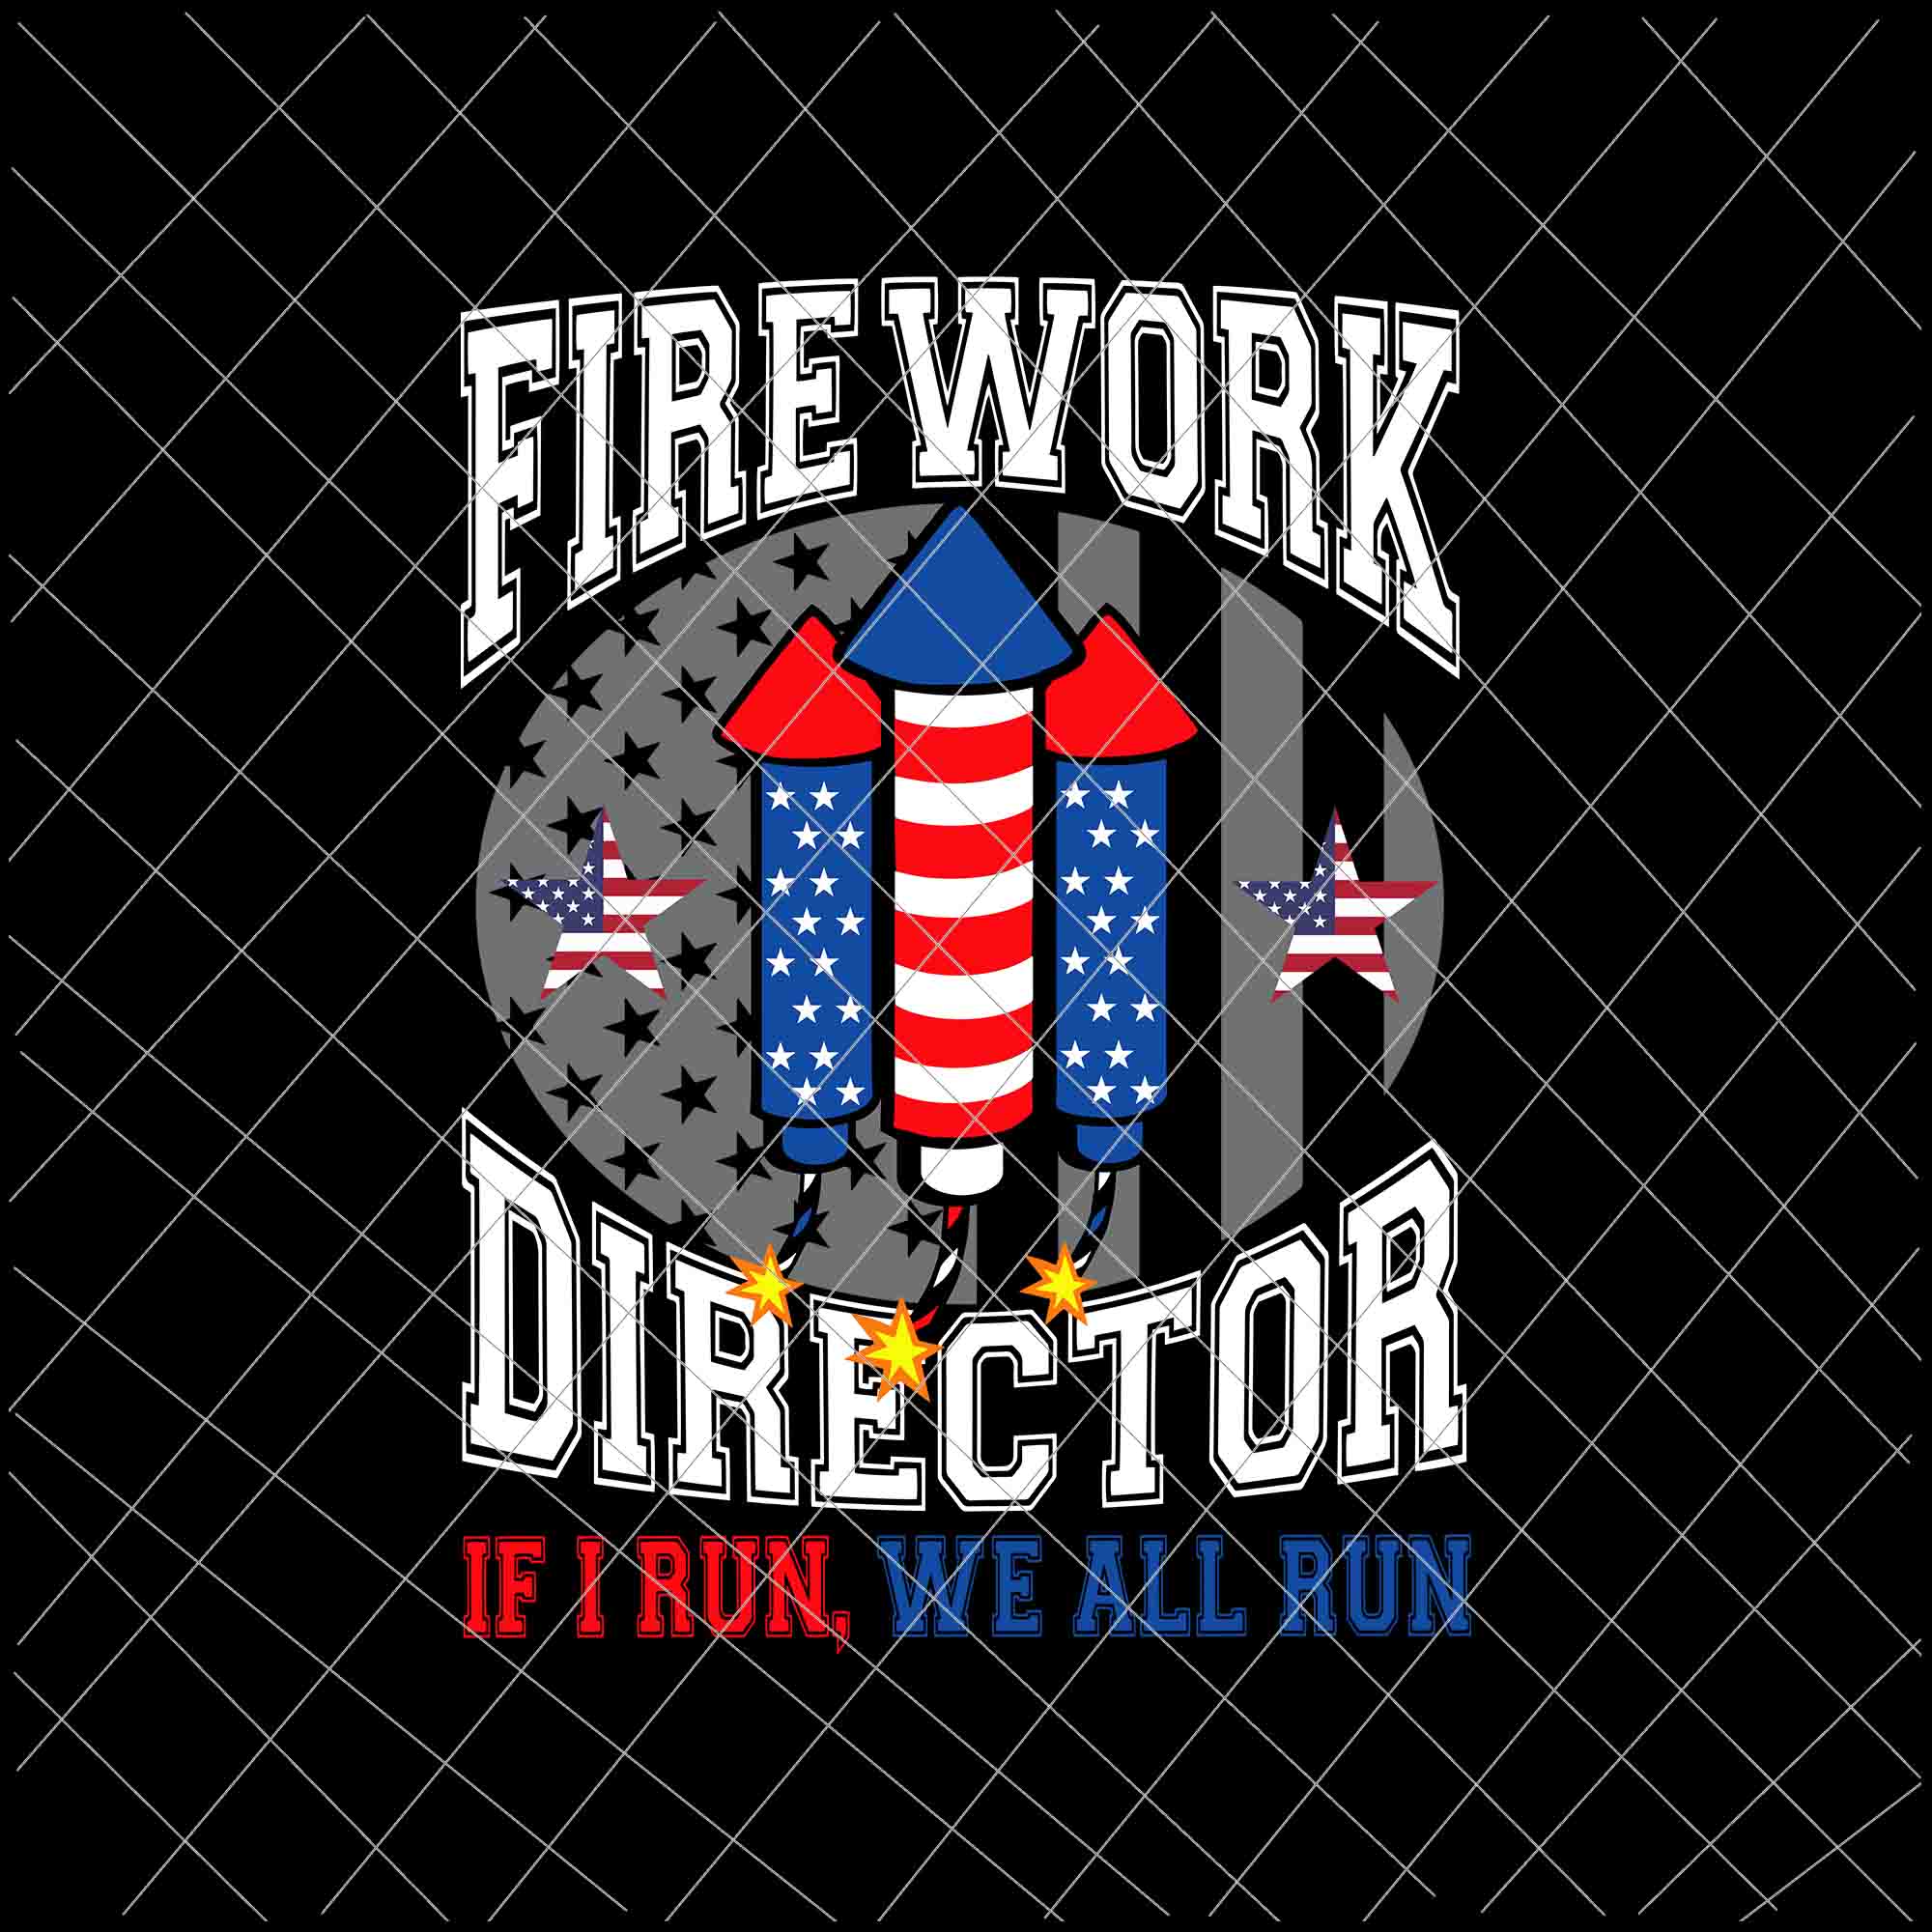 Firework Director I Run You Run Svg, 4th Of July Svg, Independence Day, US Flag Svg, Patriotic Svg, America Svg, Fourth of July Bundle svg, USA Flag Svg, USA Svg